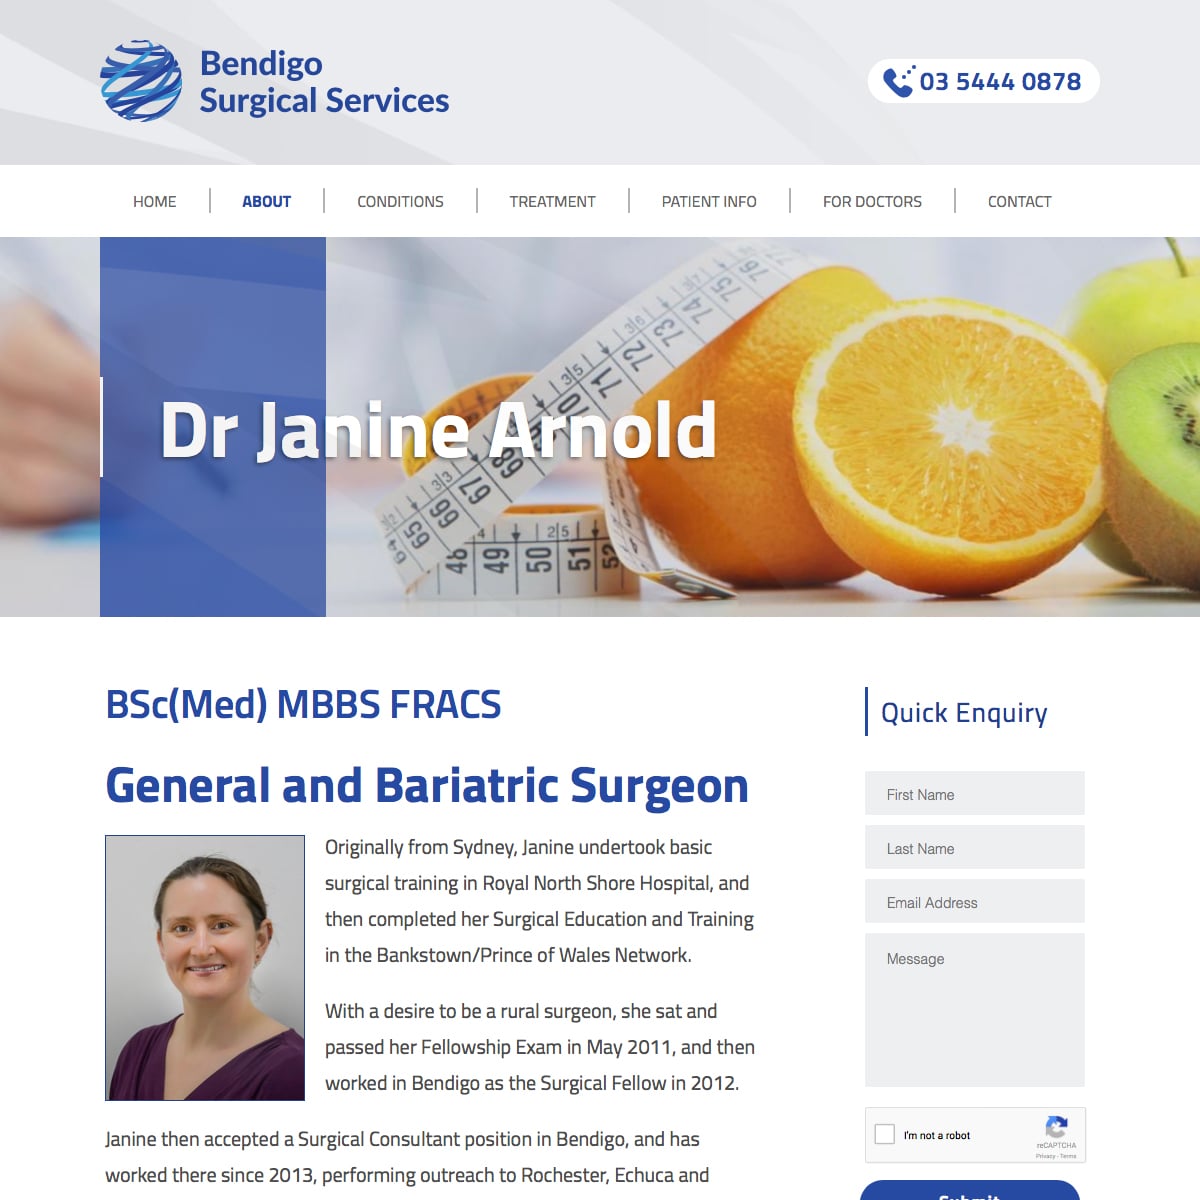 Bendigo Surgical Services - Doctor Bio